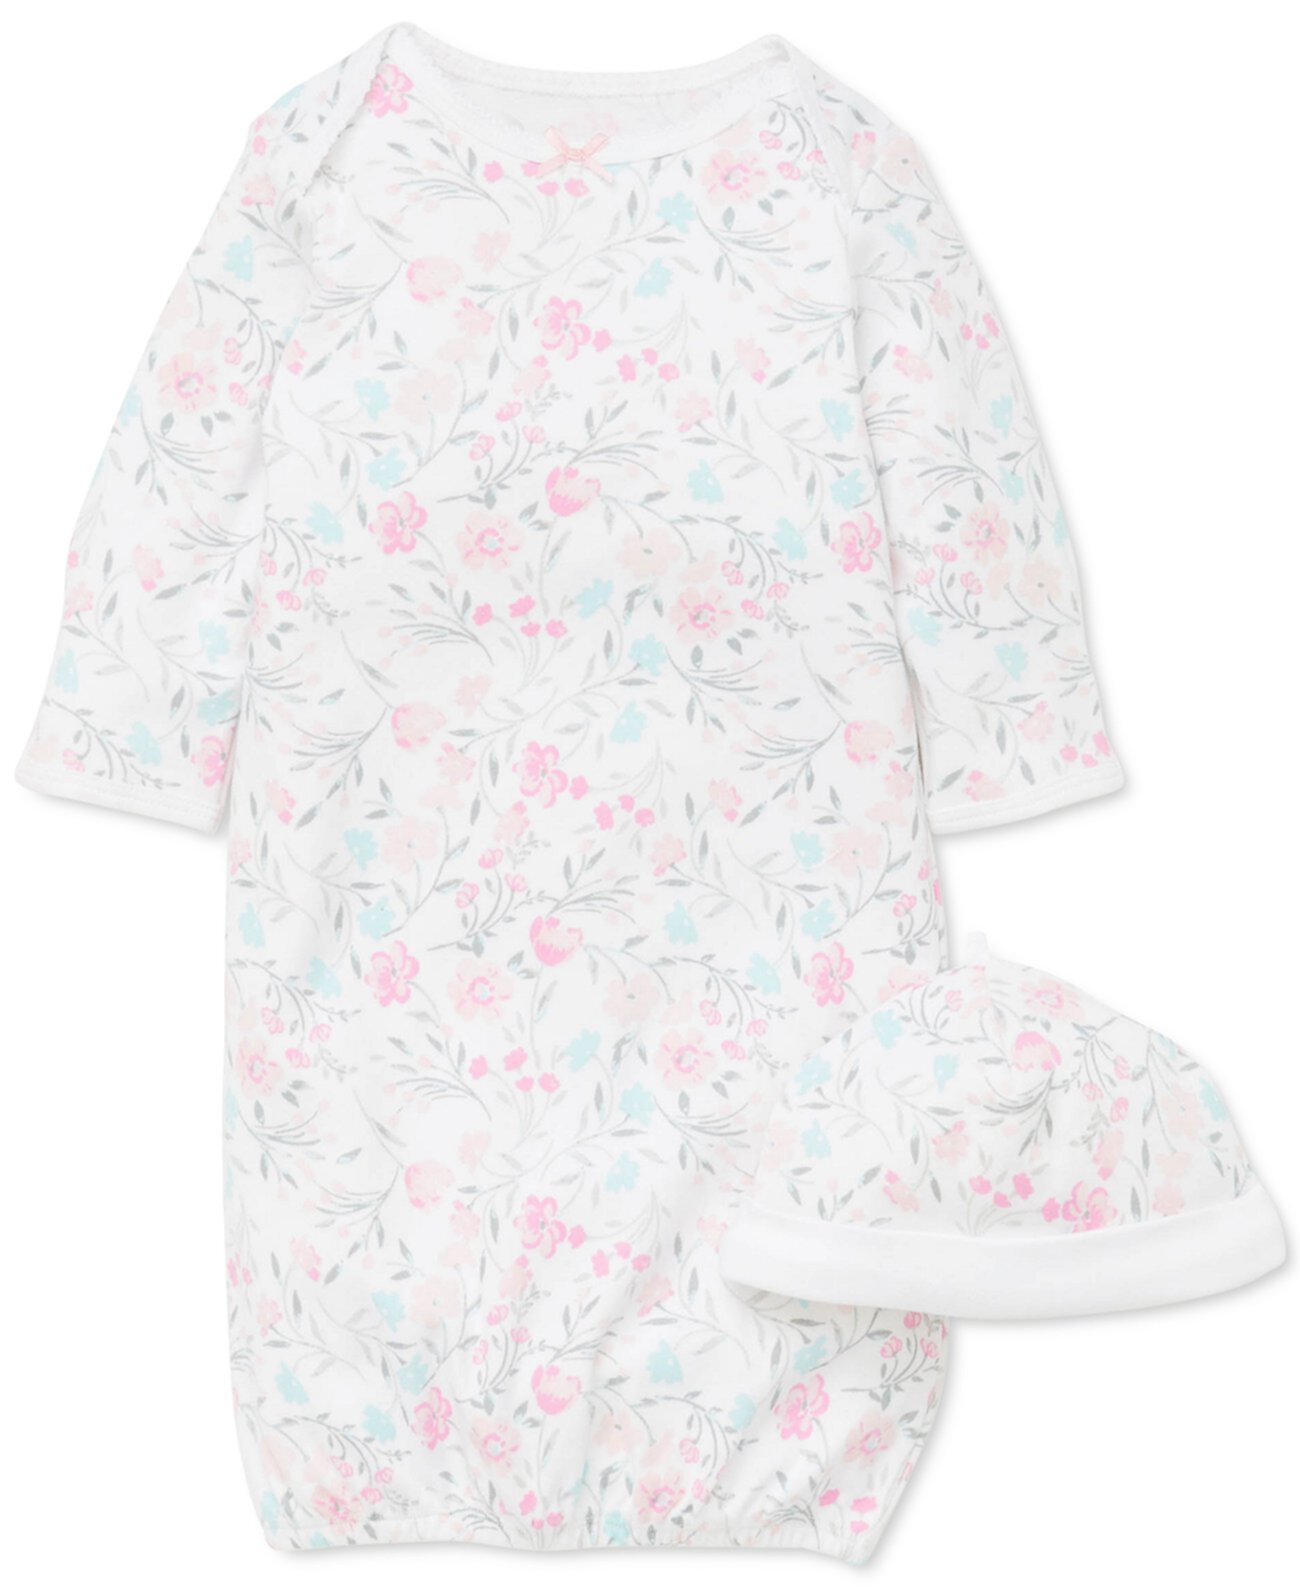 Baby Girls 2-Pc. Хлопковый комплект шляпы и платья с цветочным принтом Little Me